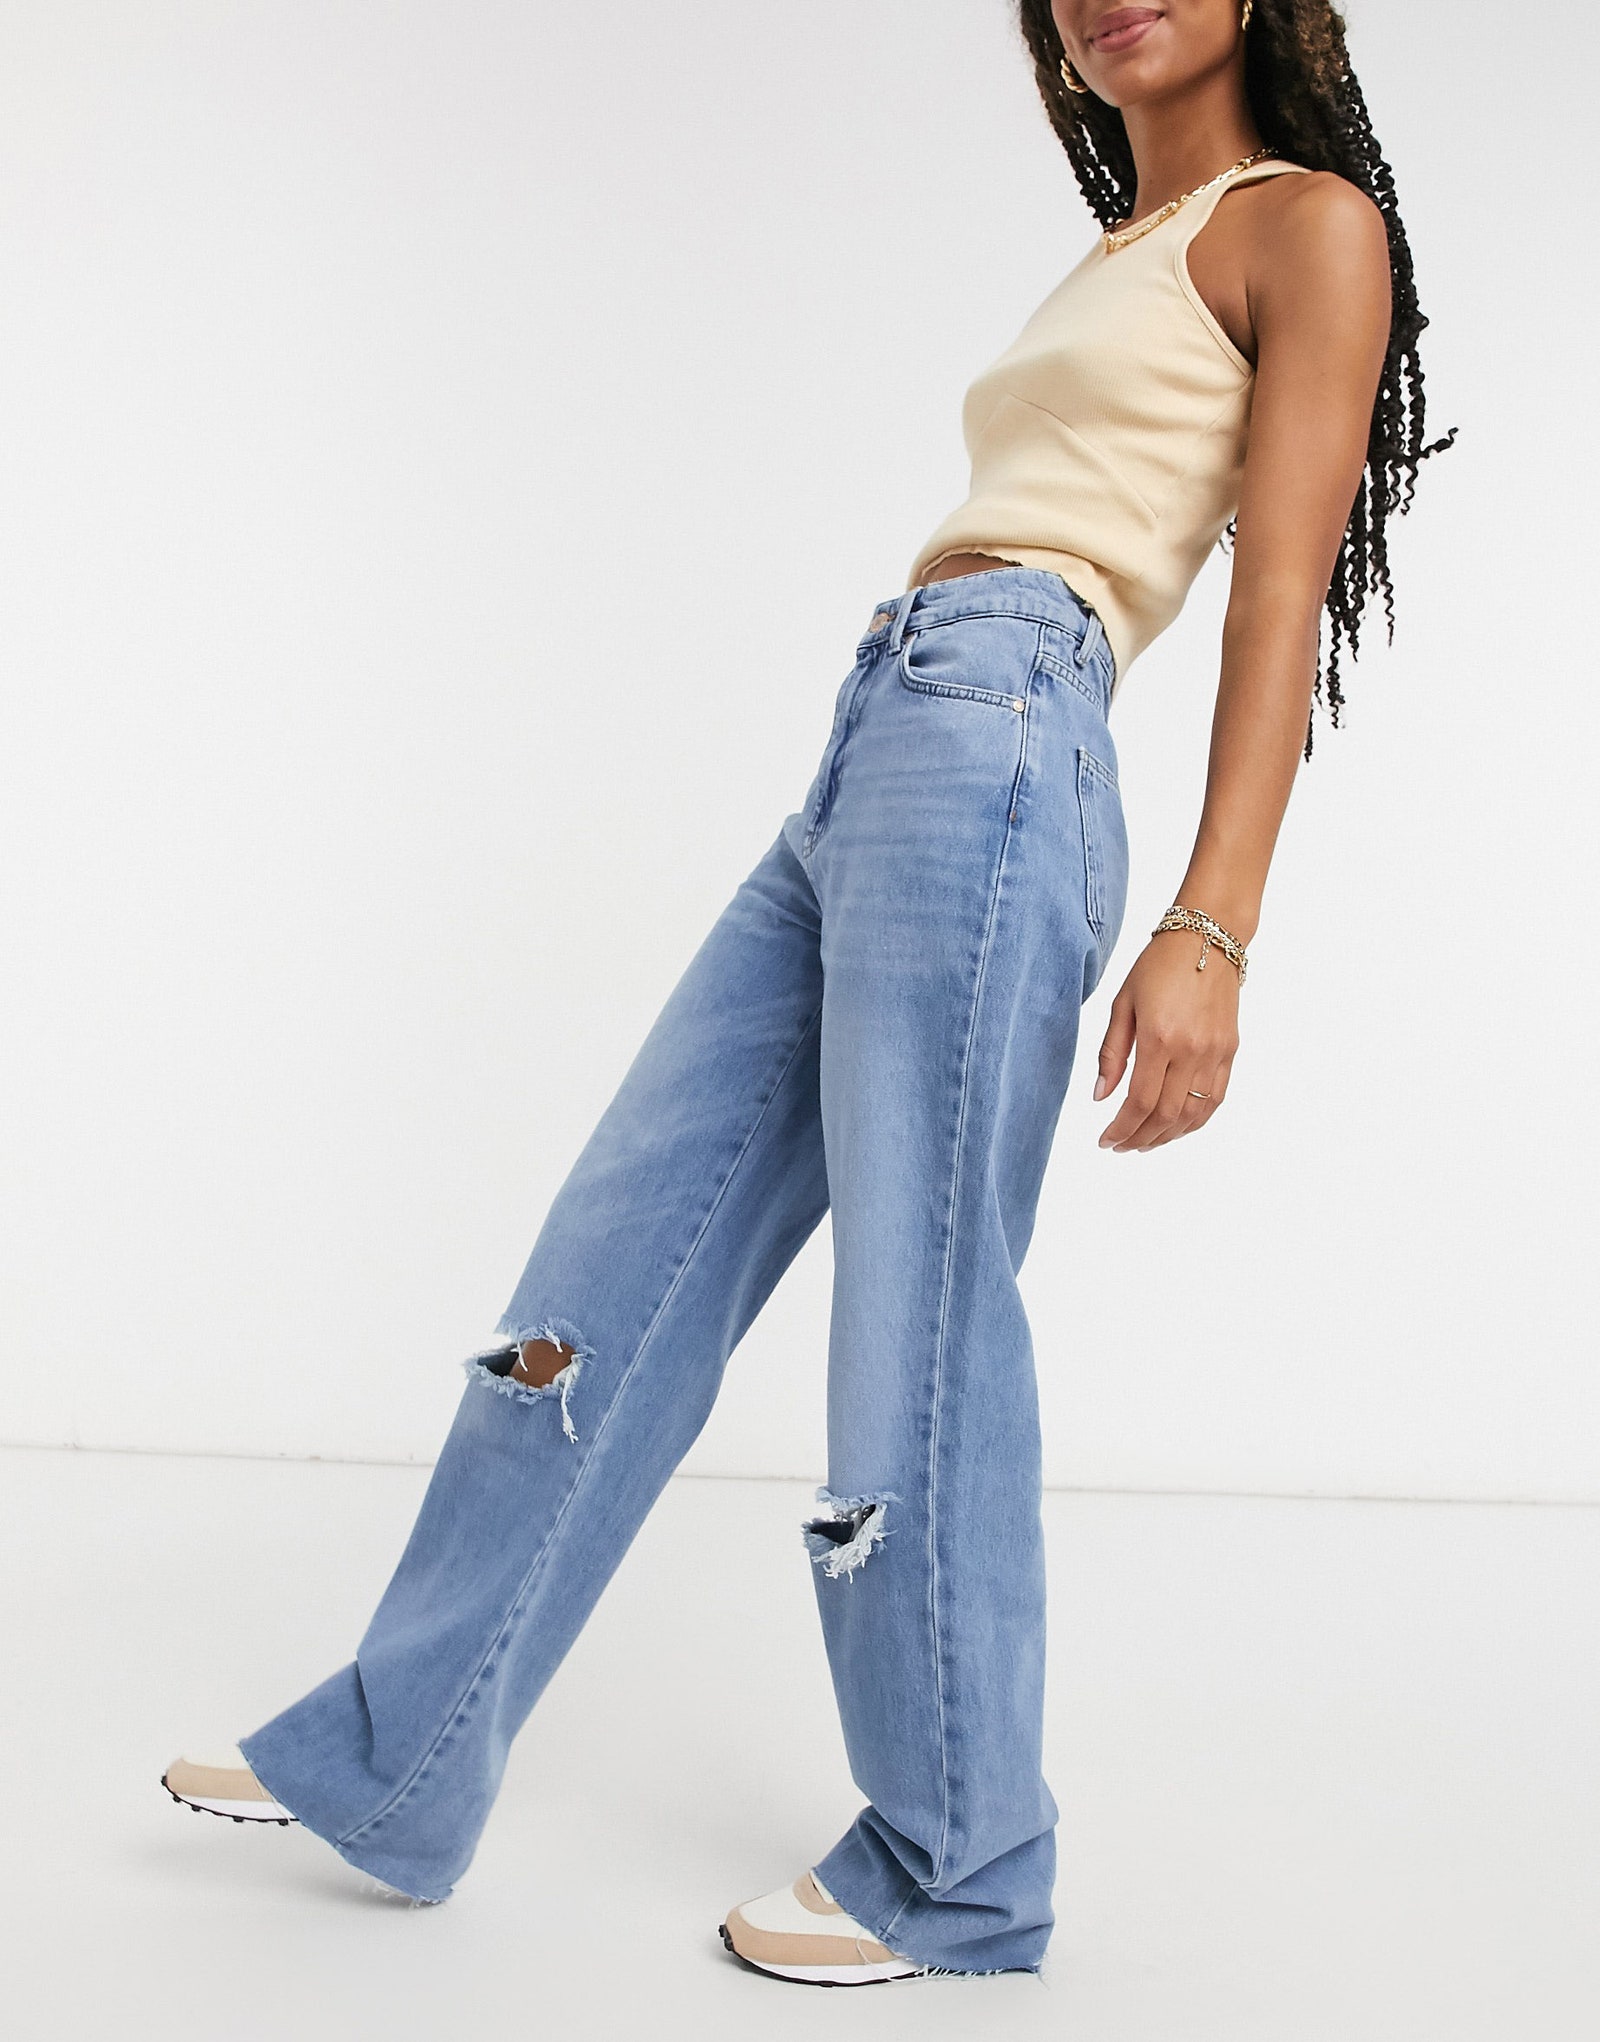 Курт Кобейн вошел в чат рваные джинсы — самые модные весной 2021 года